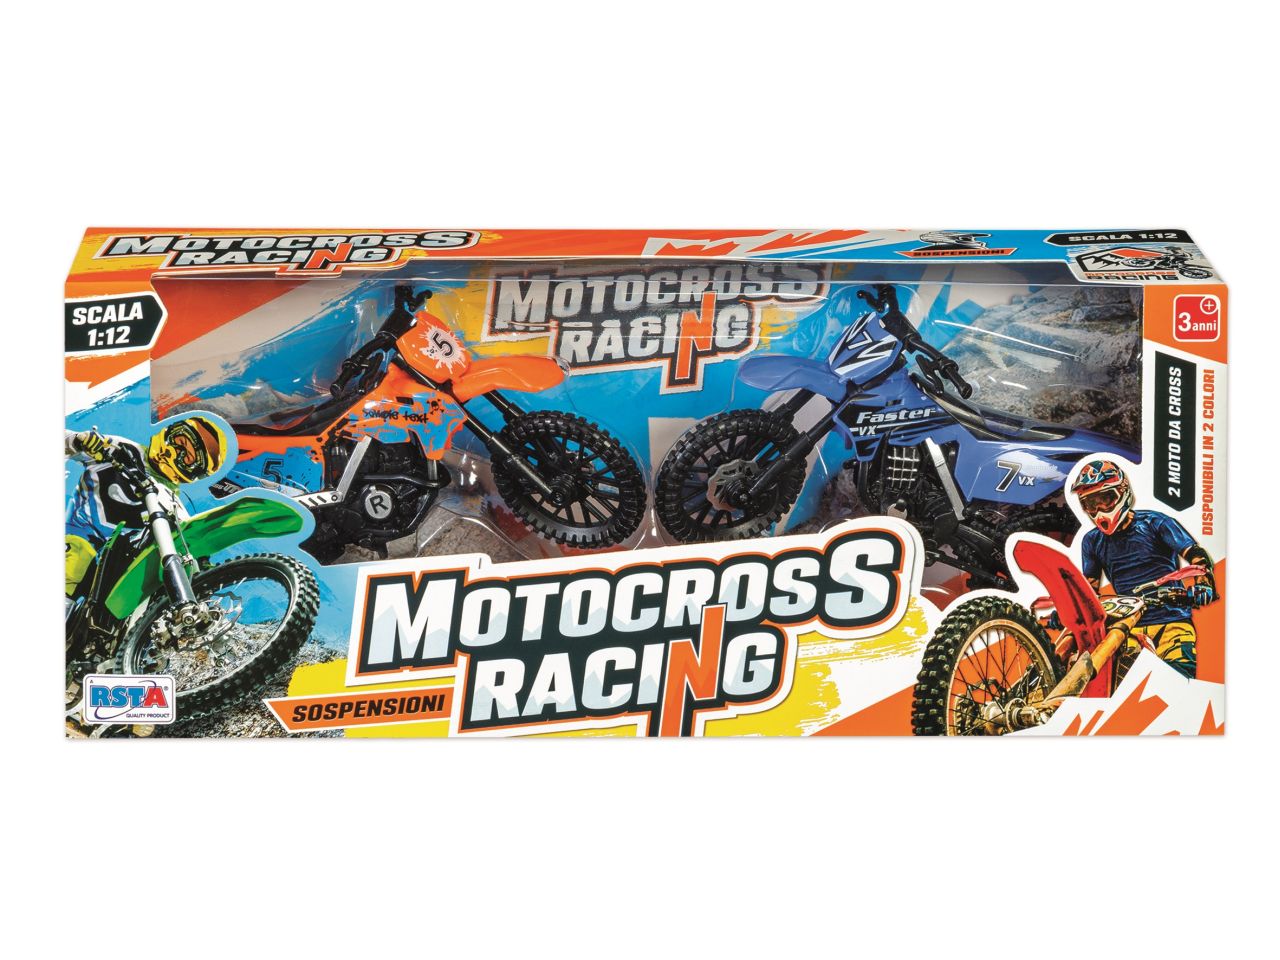 Motocross racing in scatola - la confezione comprende 2 motocross scala  1:12